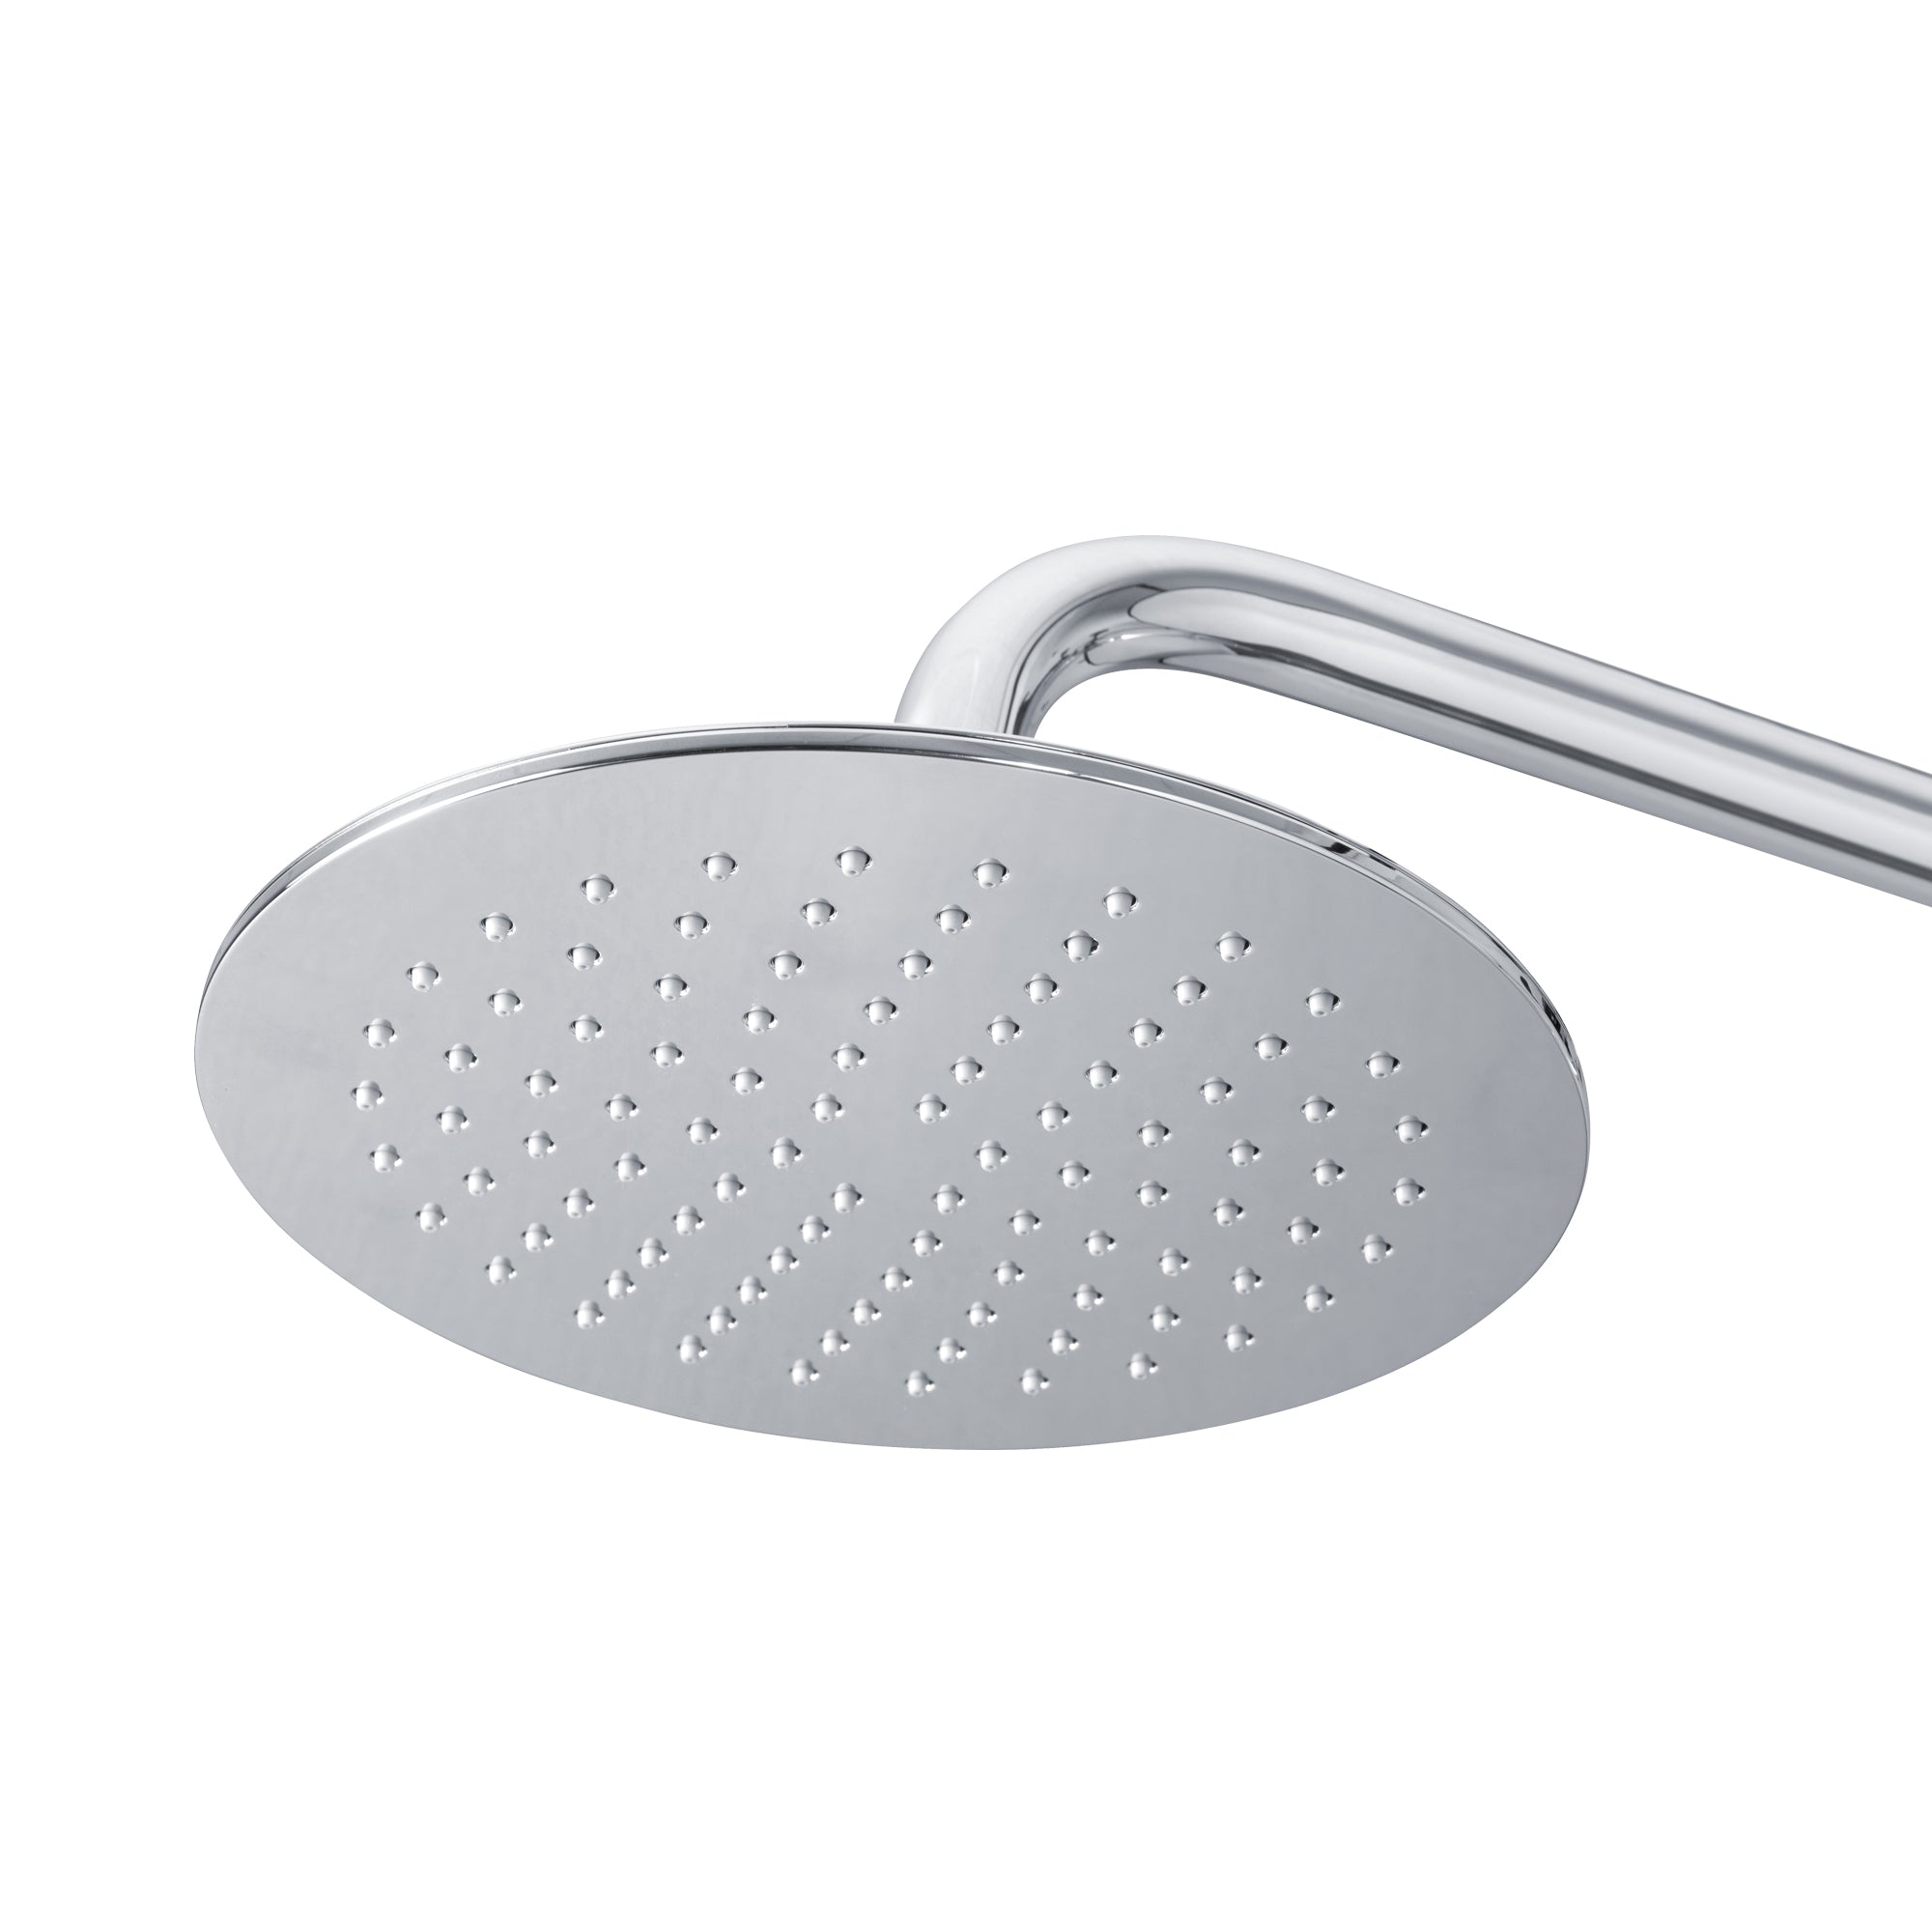 PULSE ShowerSpas Brushed Nickel Shower System - Aquarius Shower System